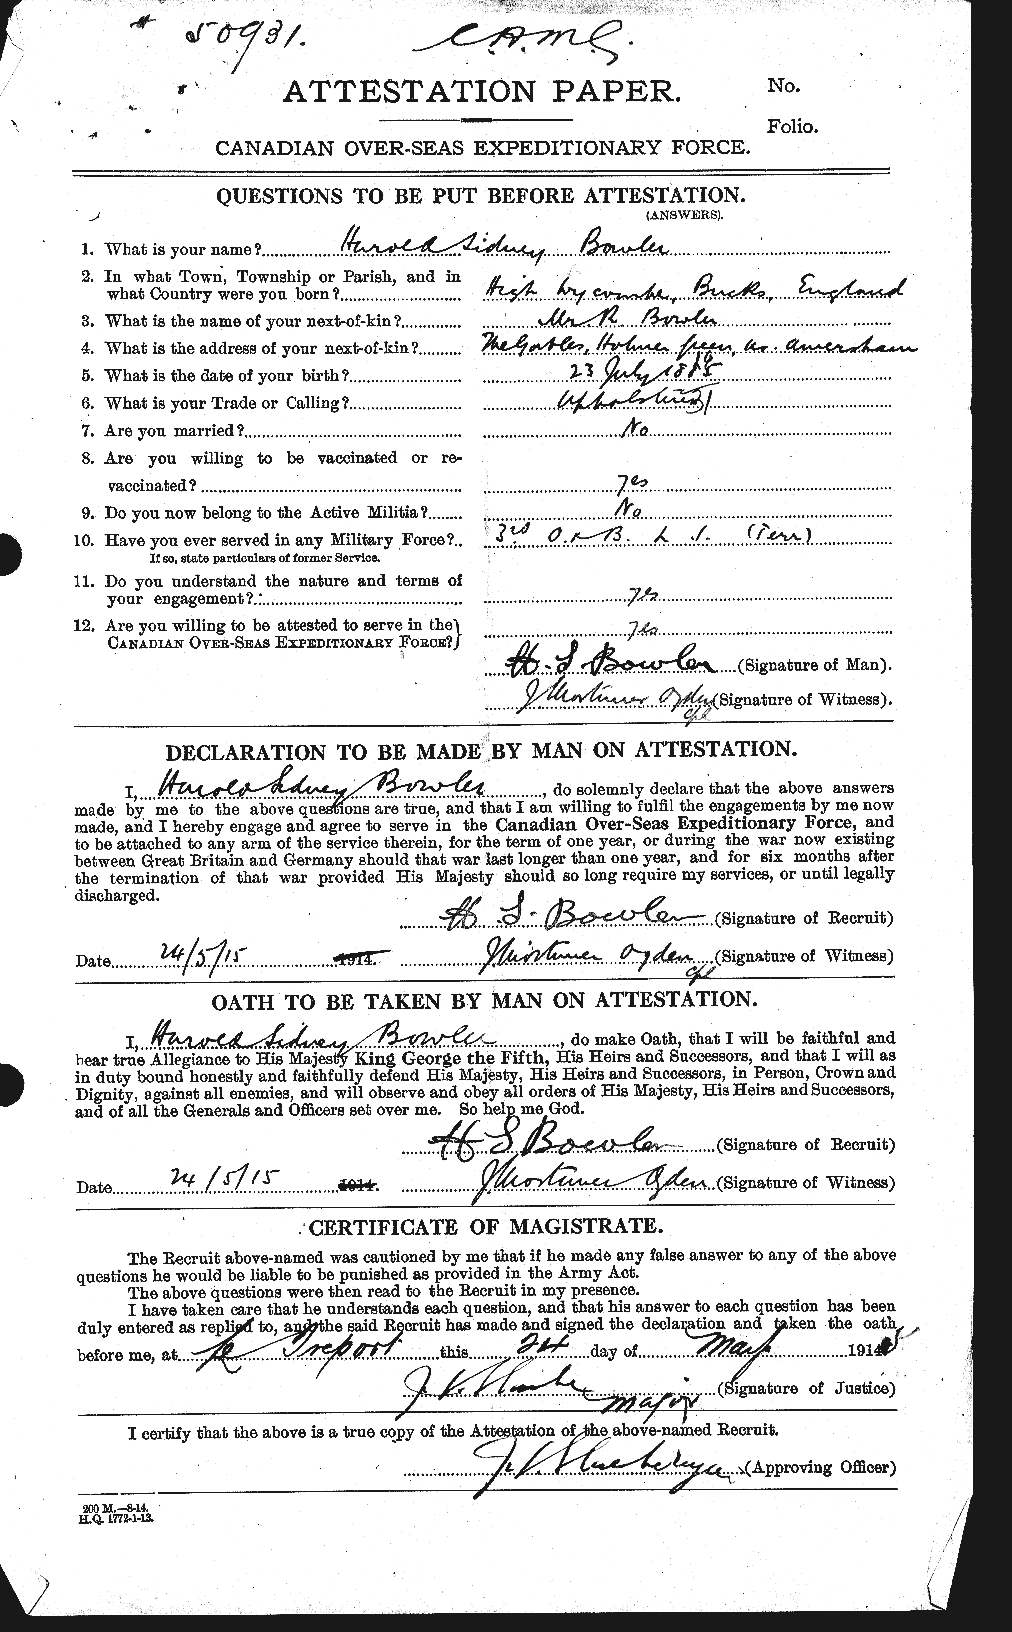 Dossiers du Personnel de la Première Guerre mondiale - CEC 253821a